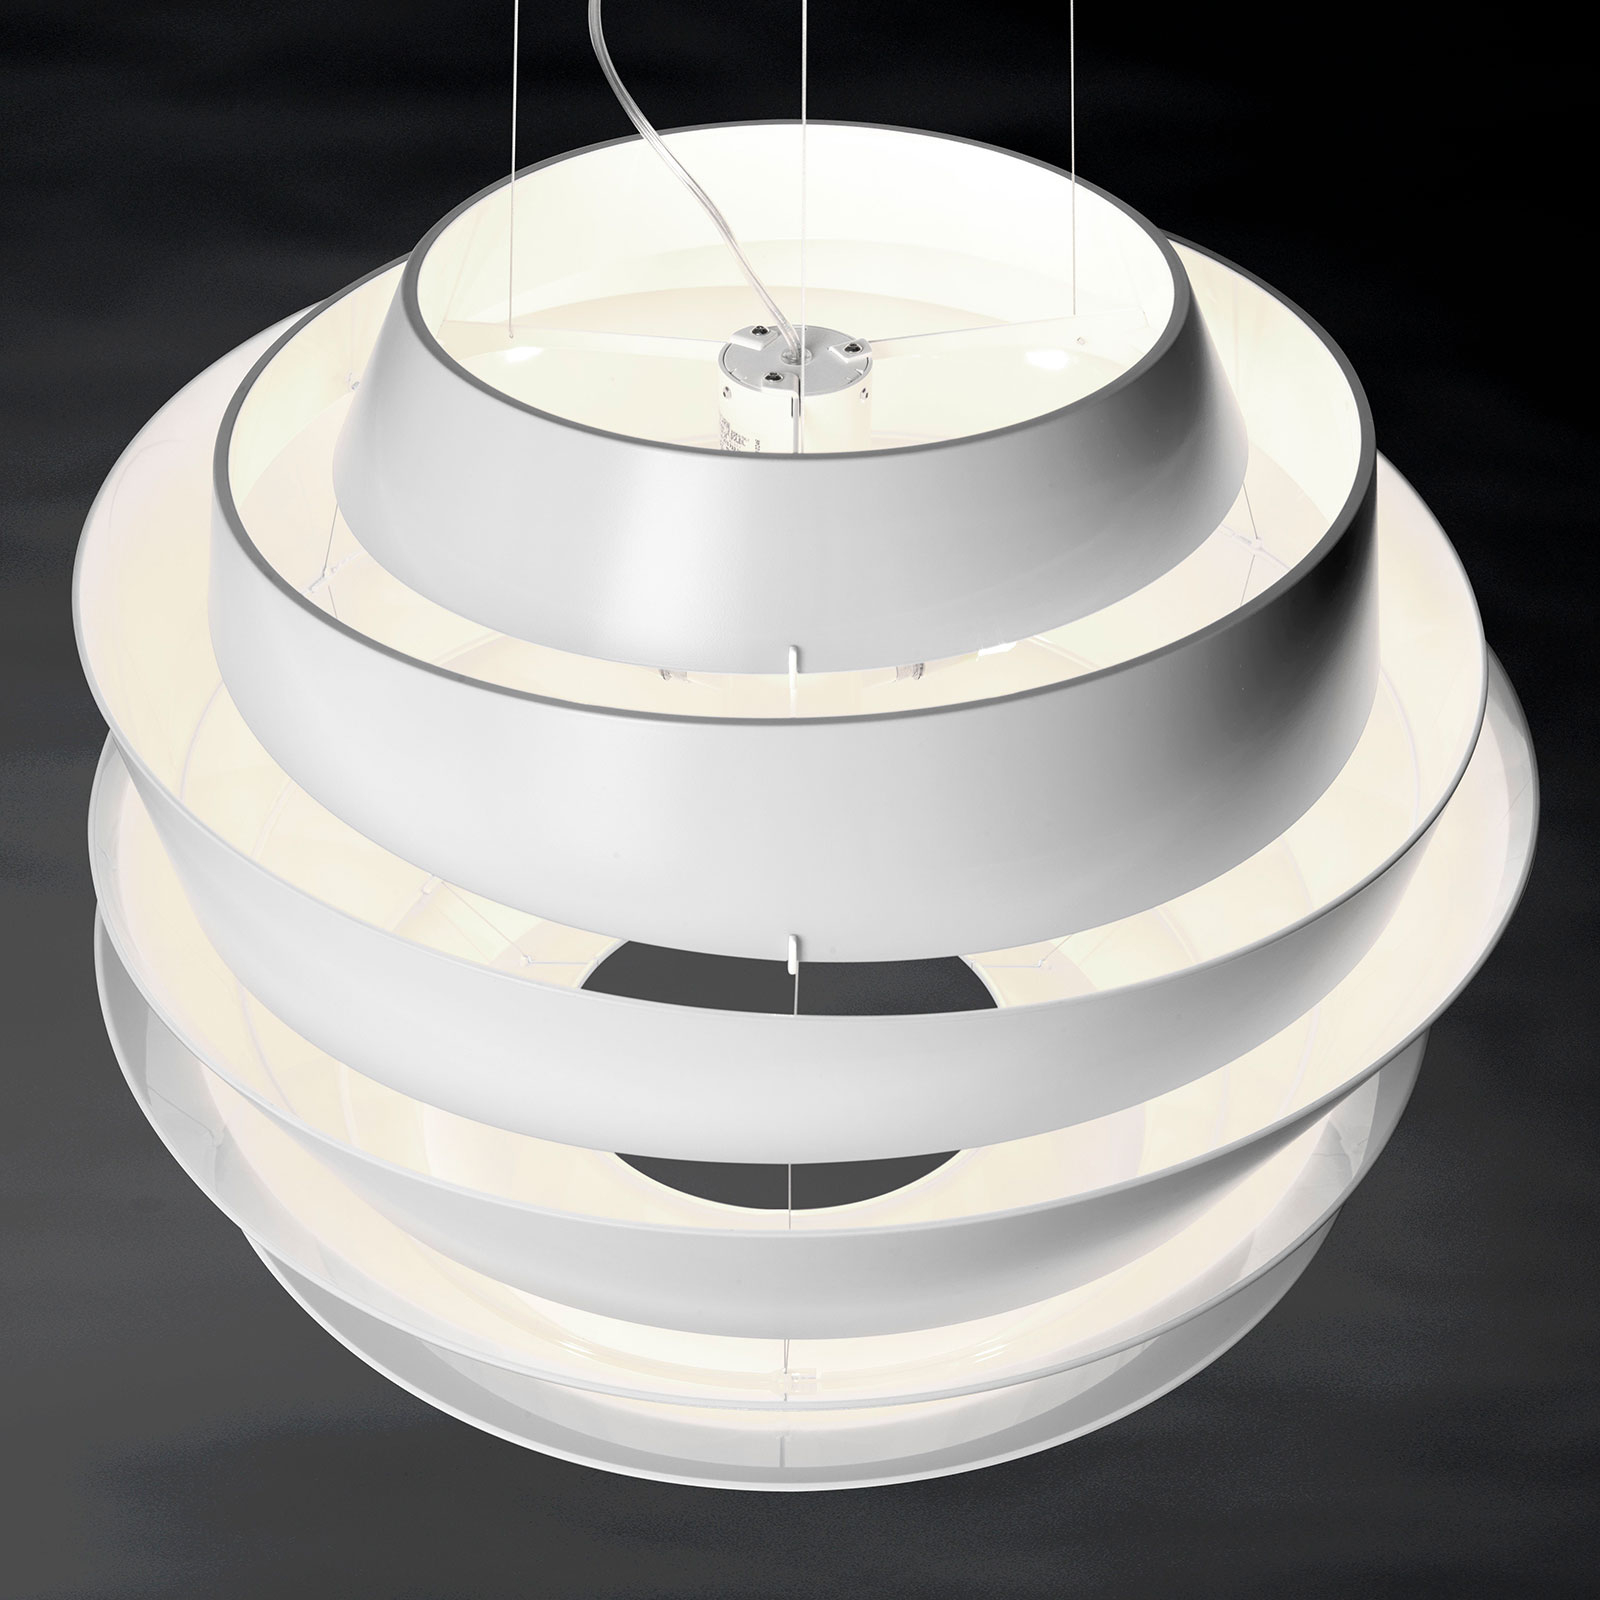 Foscarini Le Soleil sospensione LED, bianco